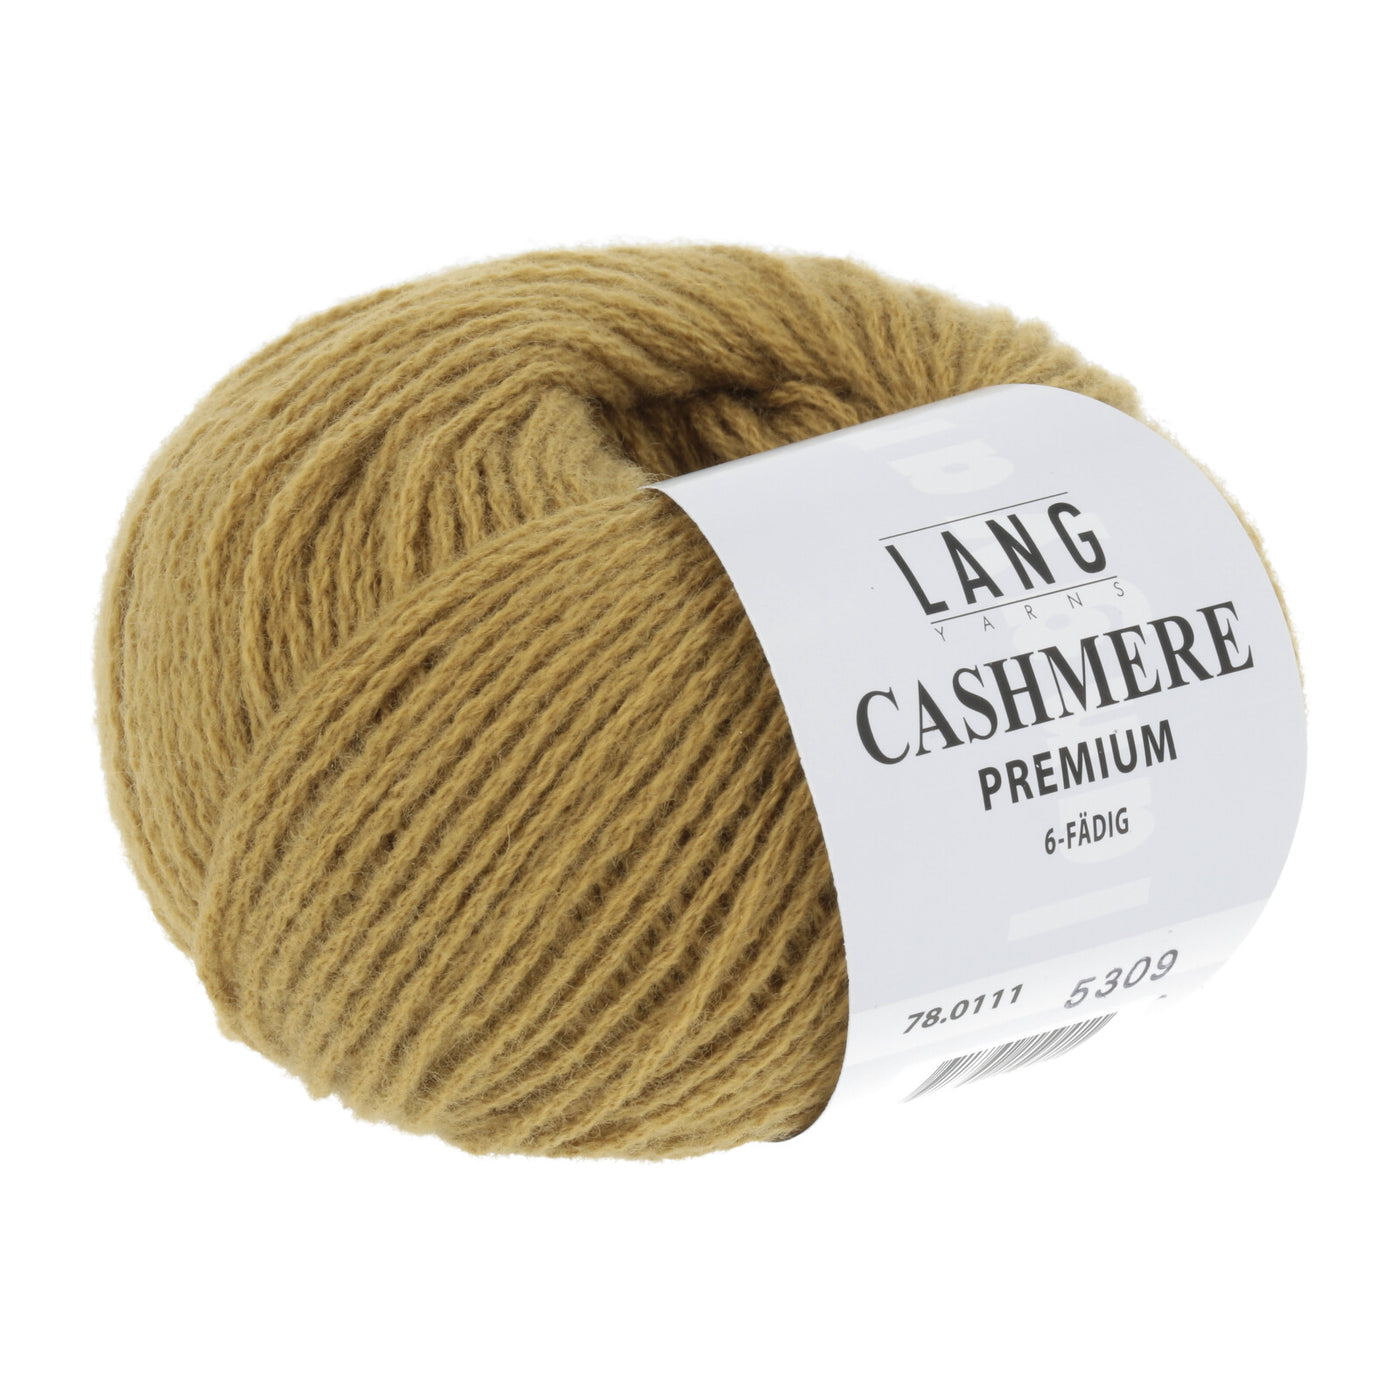 Langyarns Cashmere Premium Yarn